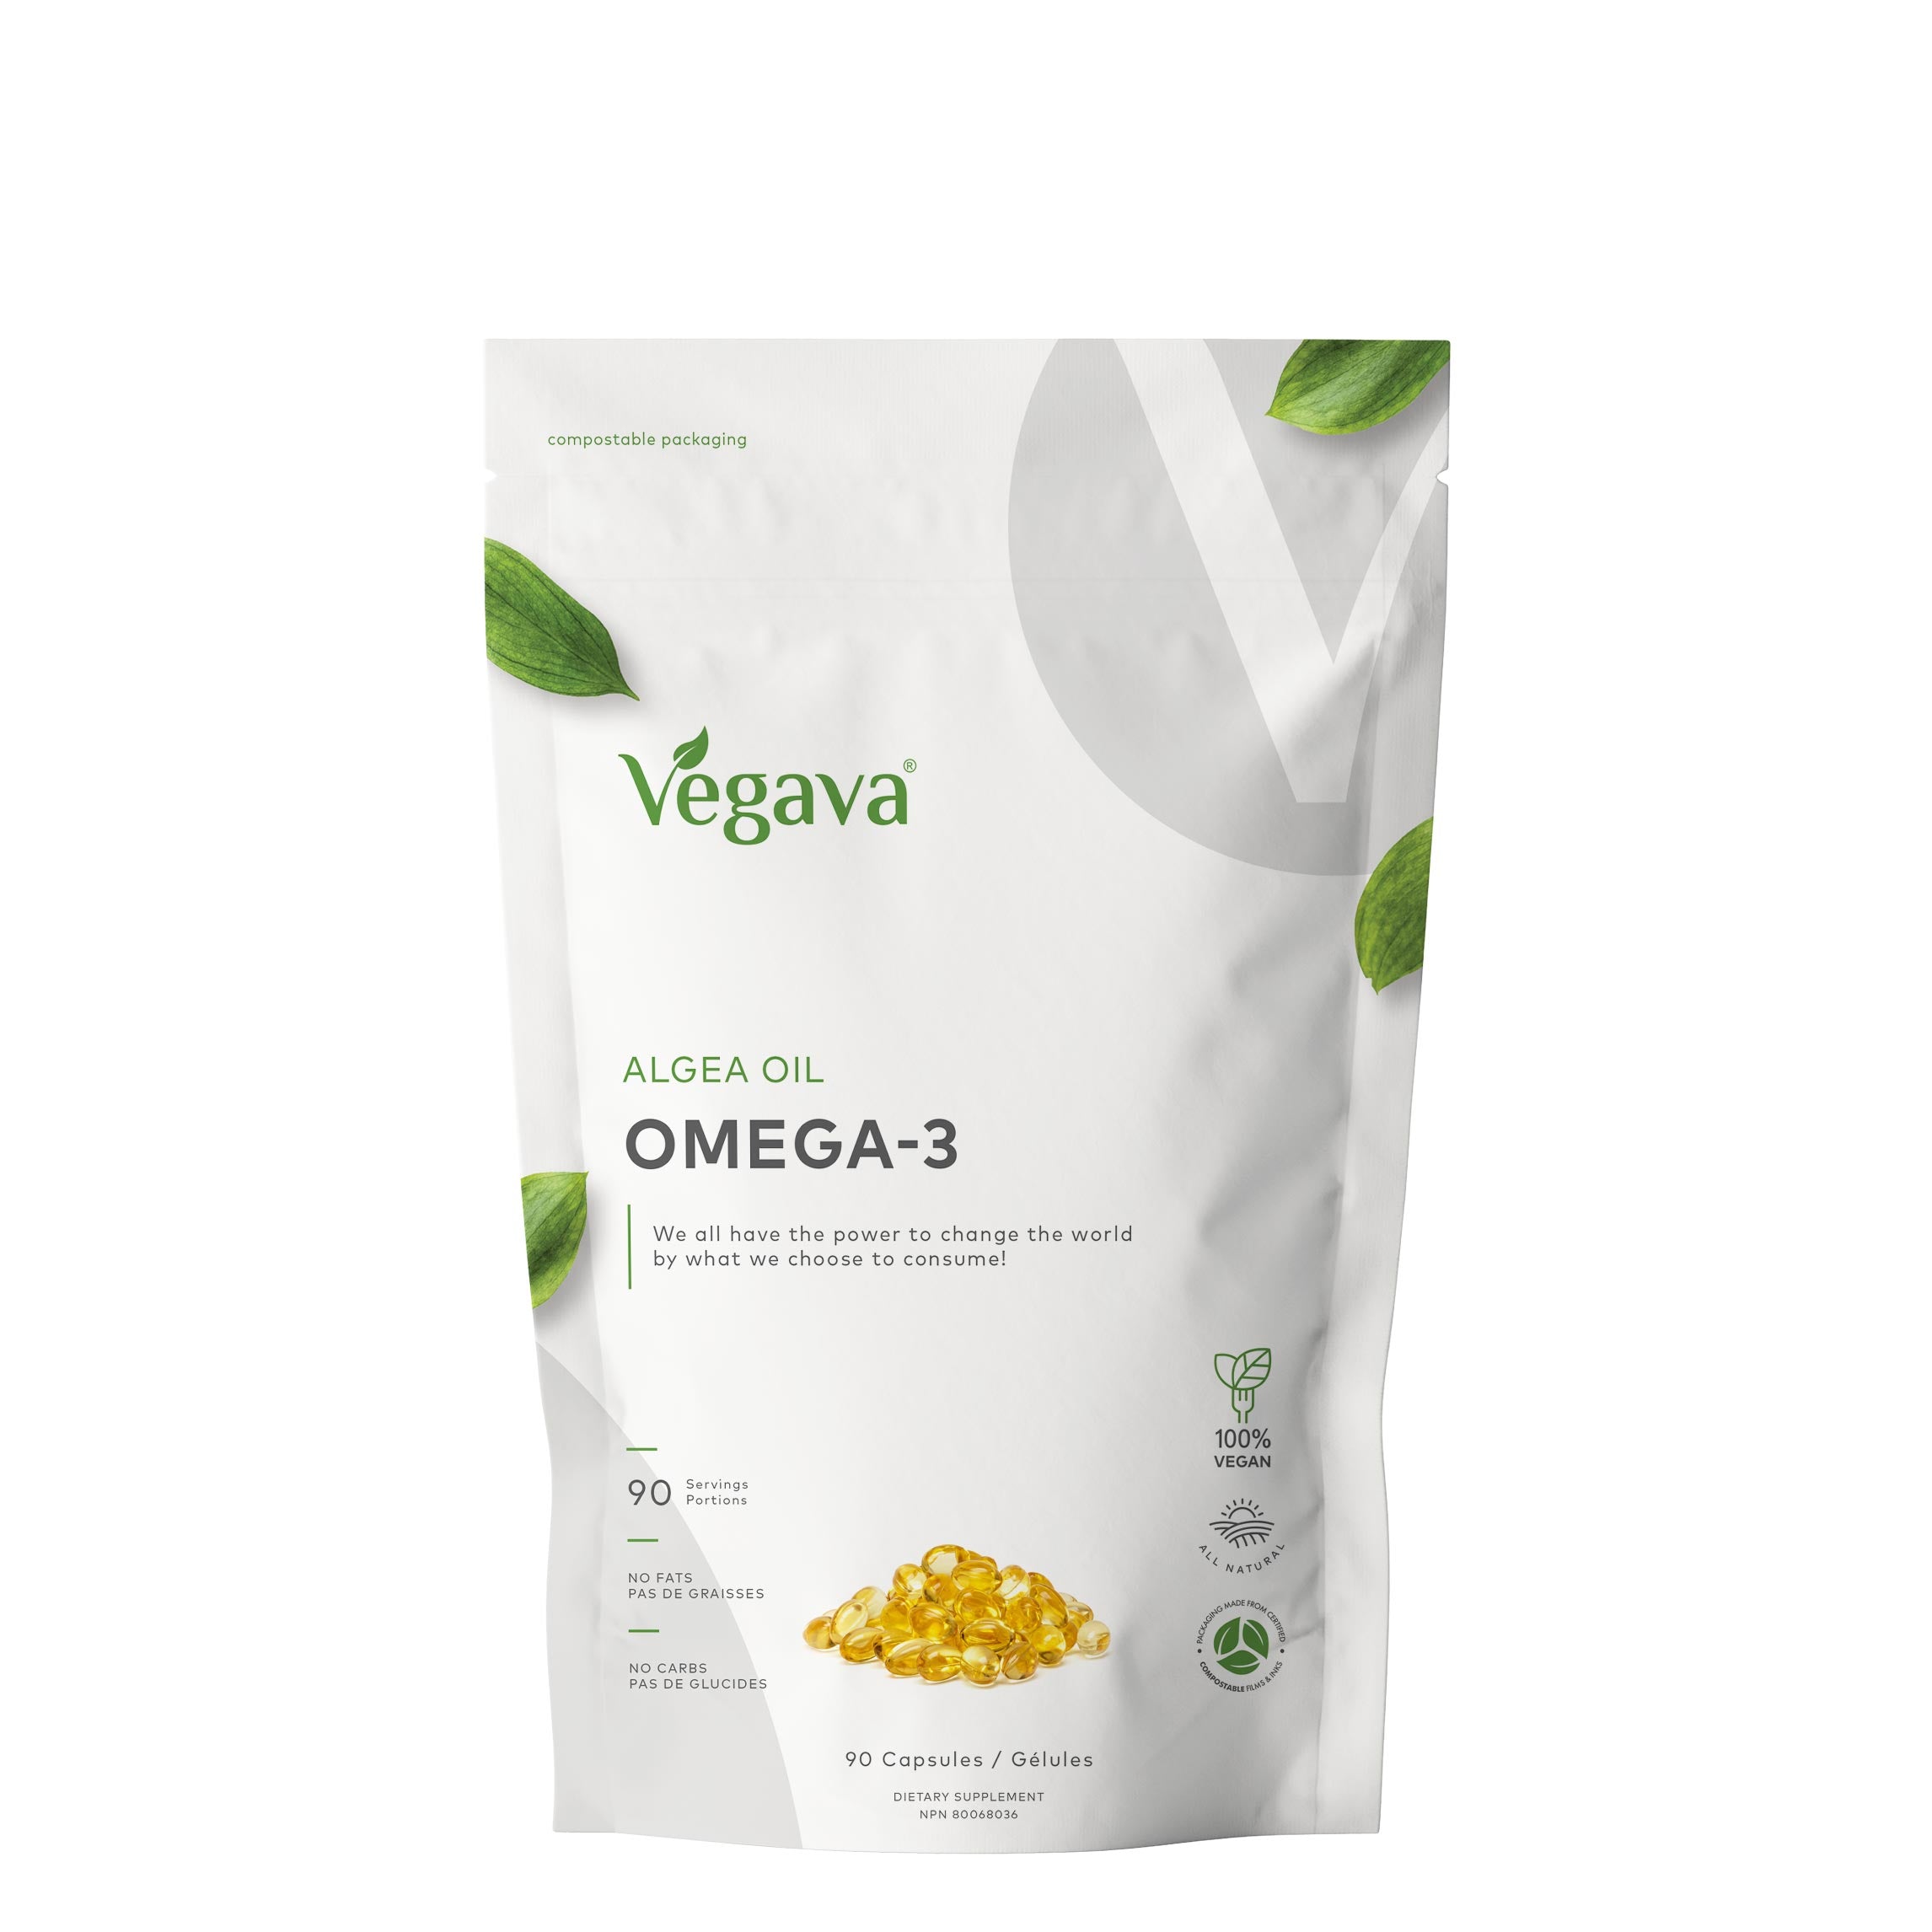 Vegan Omega-3 Power